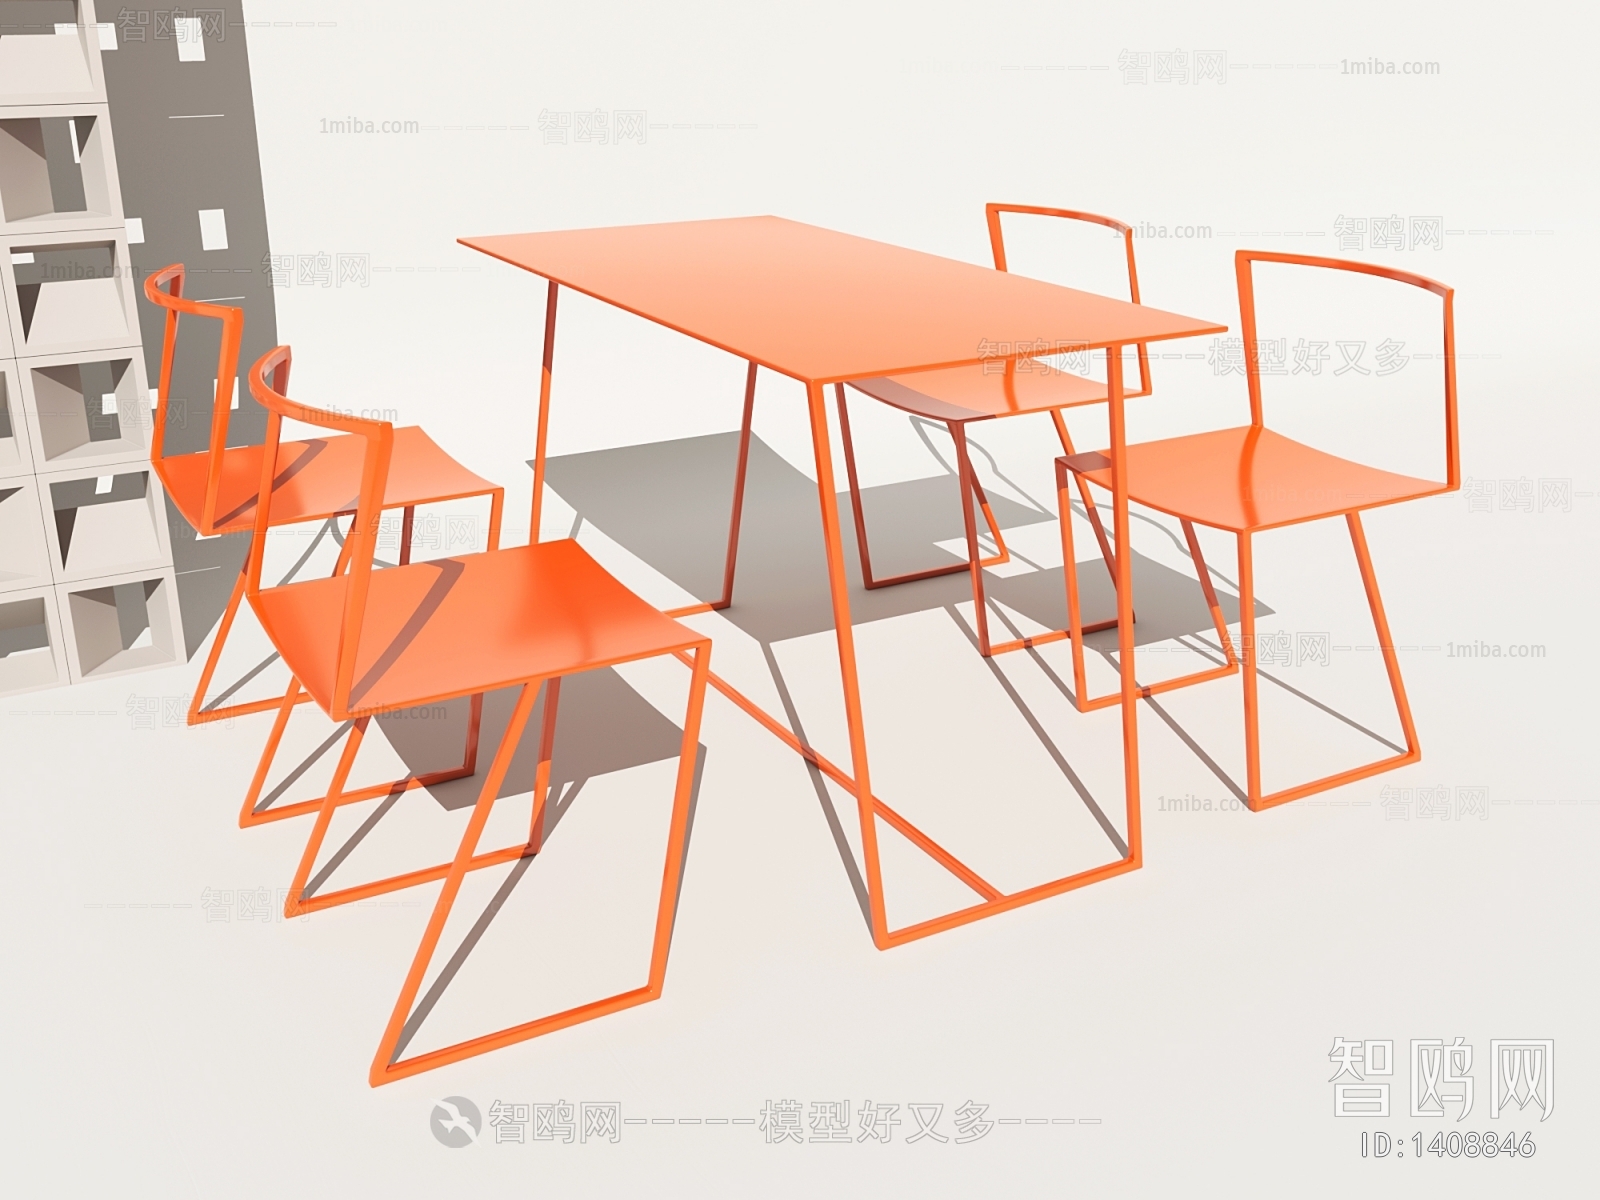 工业风餐桌椅